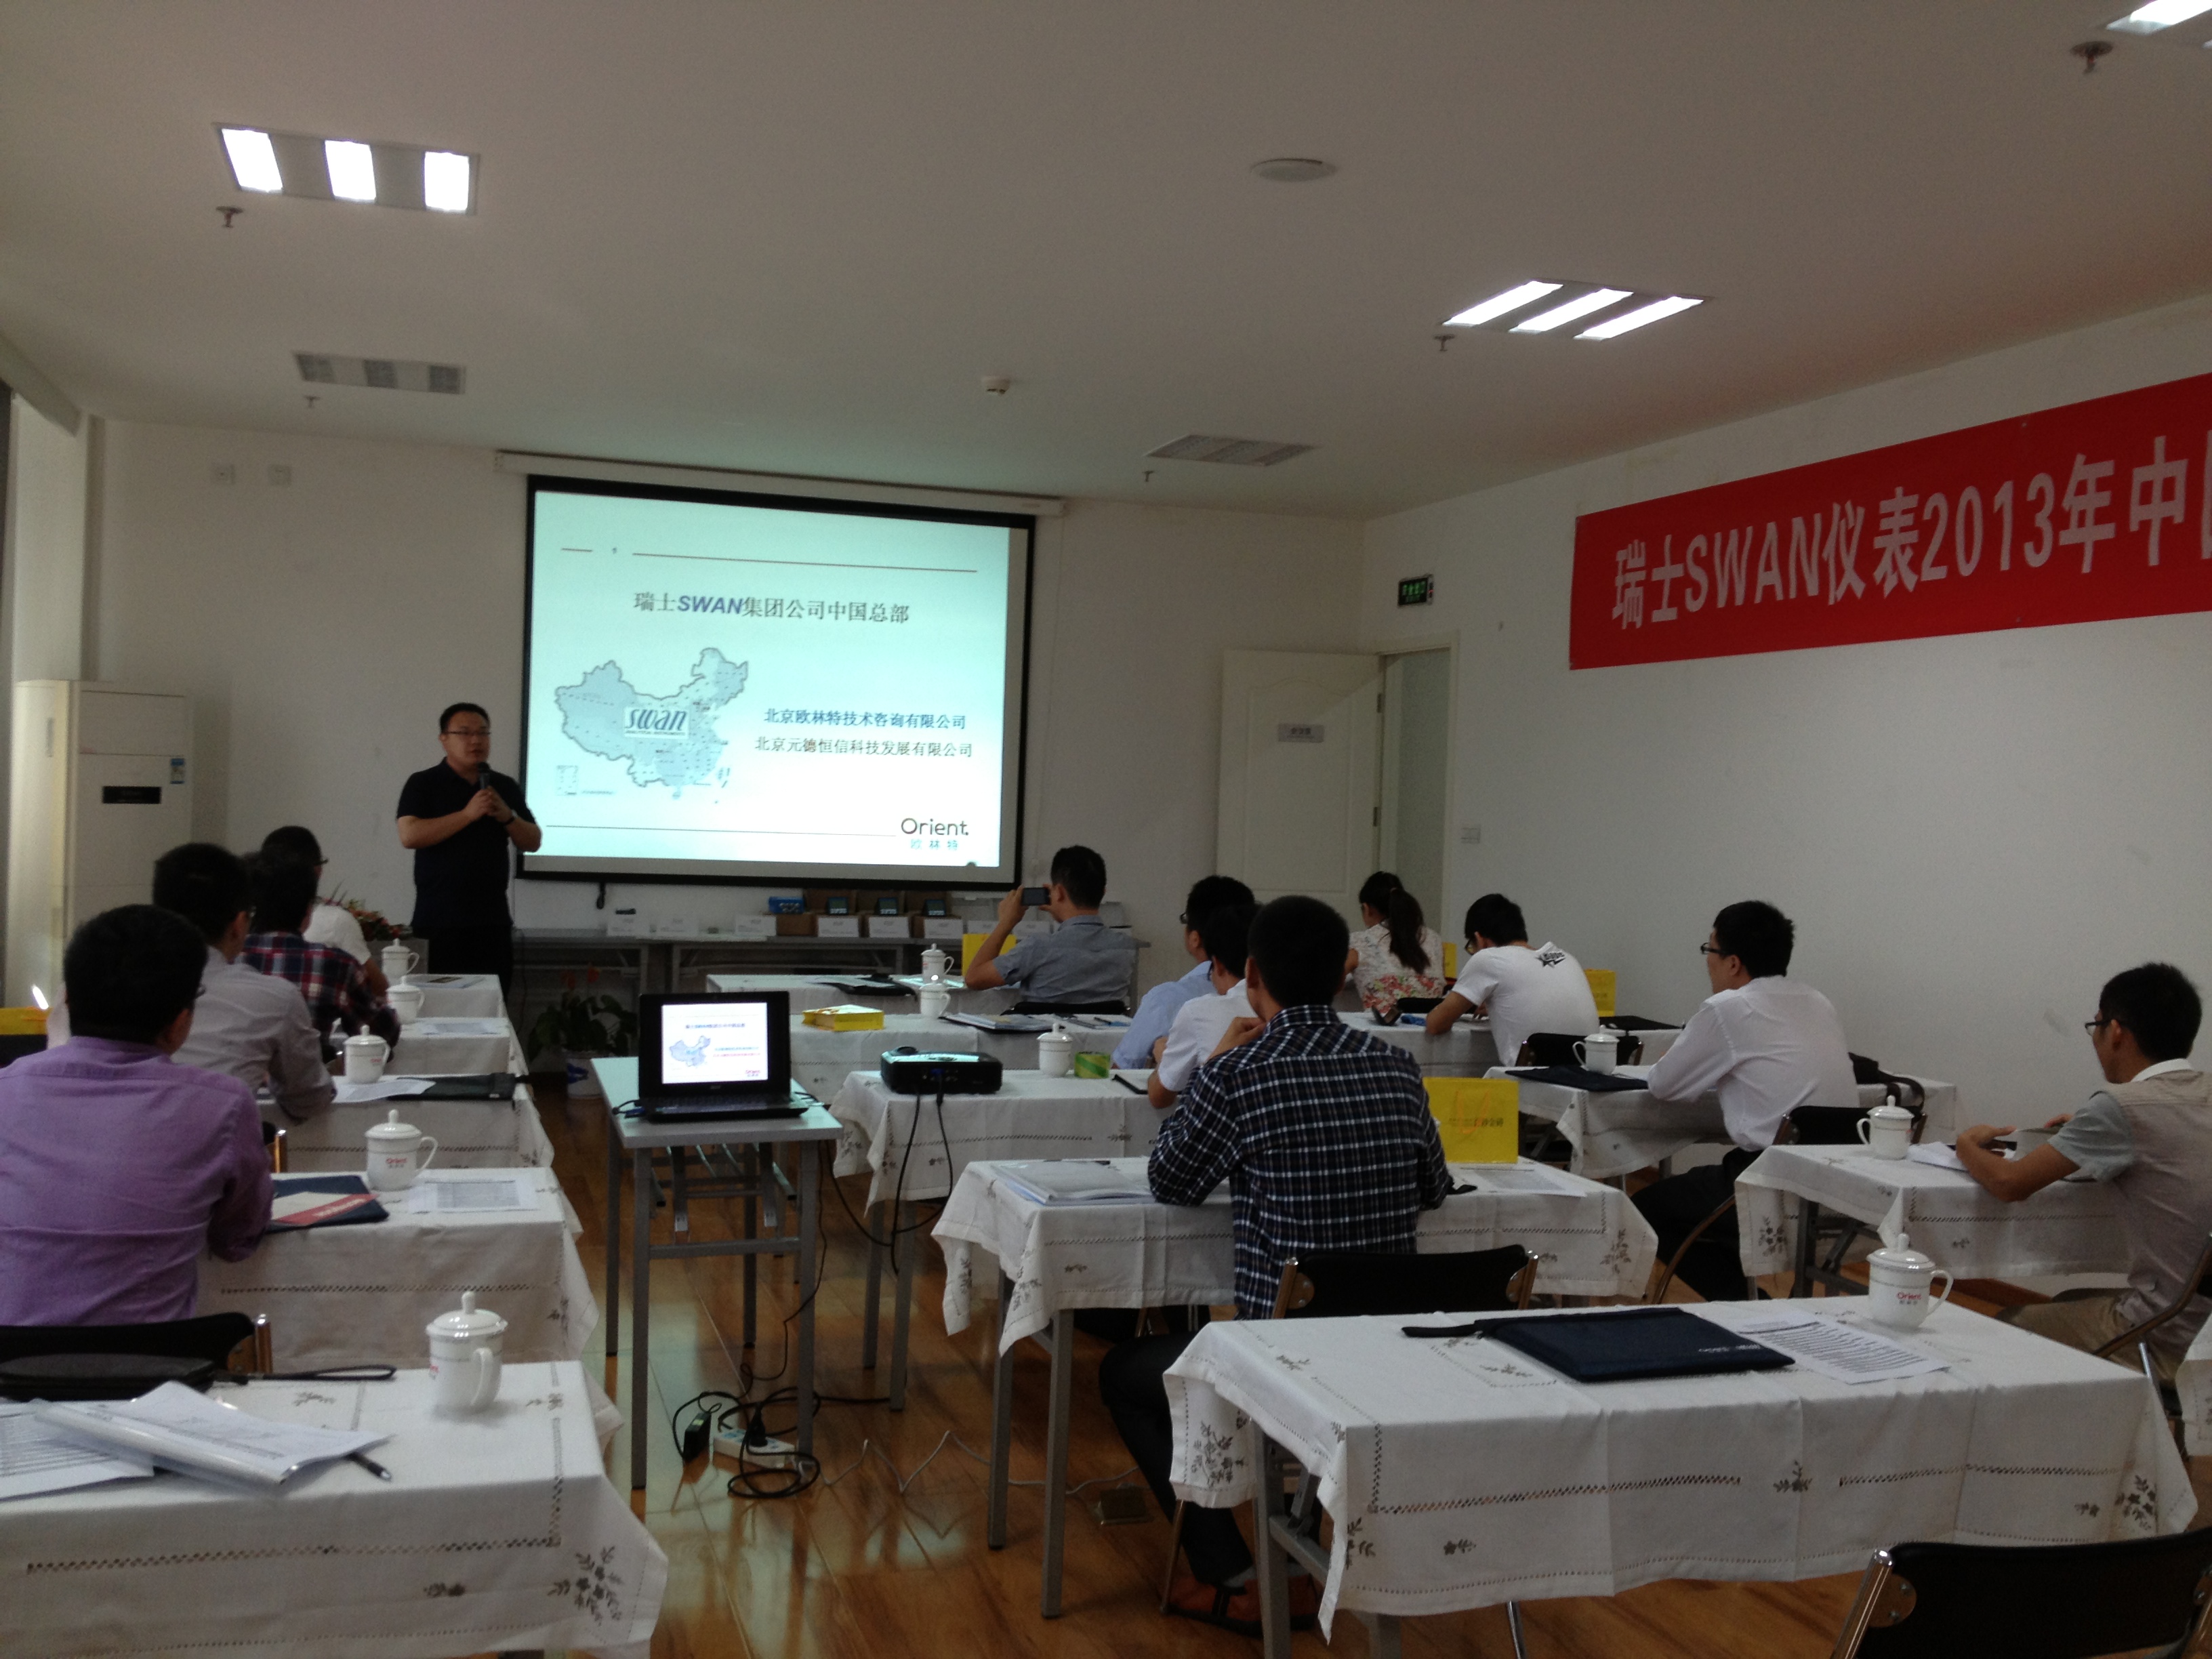 201309222013年中国广西区瑞士SWAN仪表技术培训与交流会